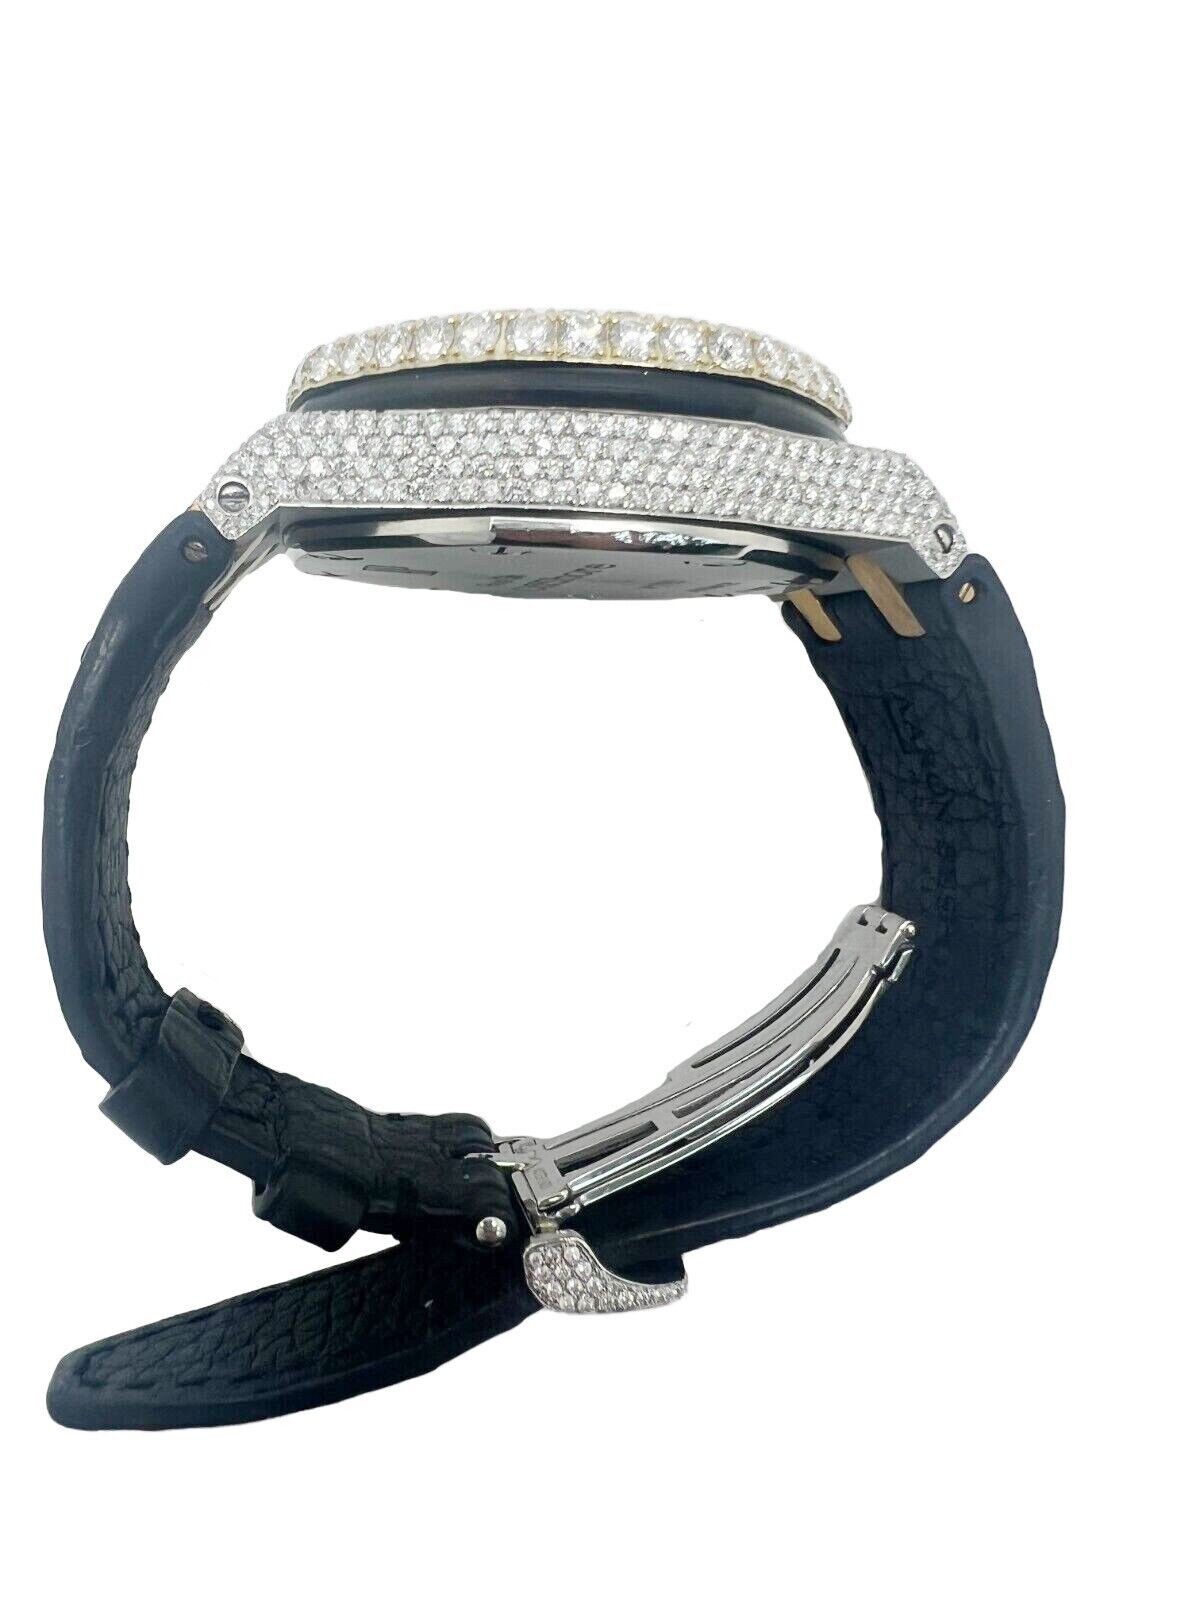 Audemars Piguet 42MM Offshore Customized 22 Carats Diamond Watch